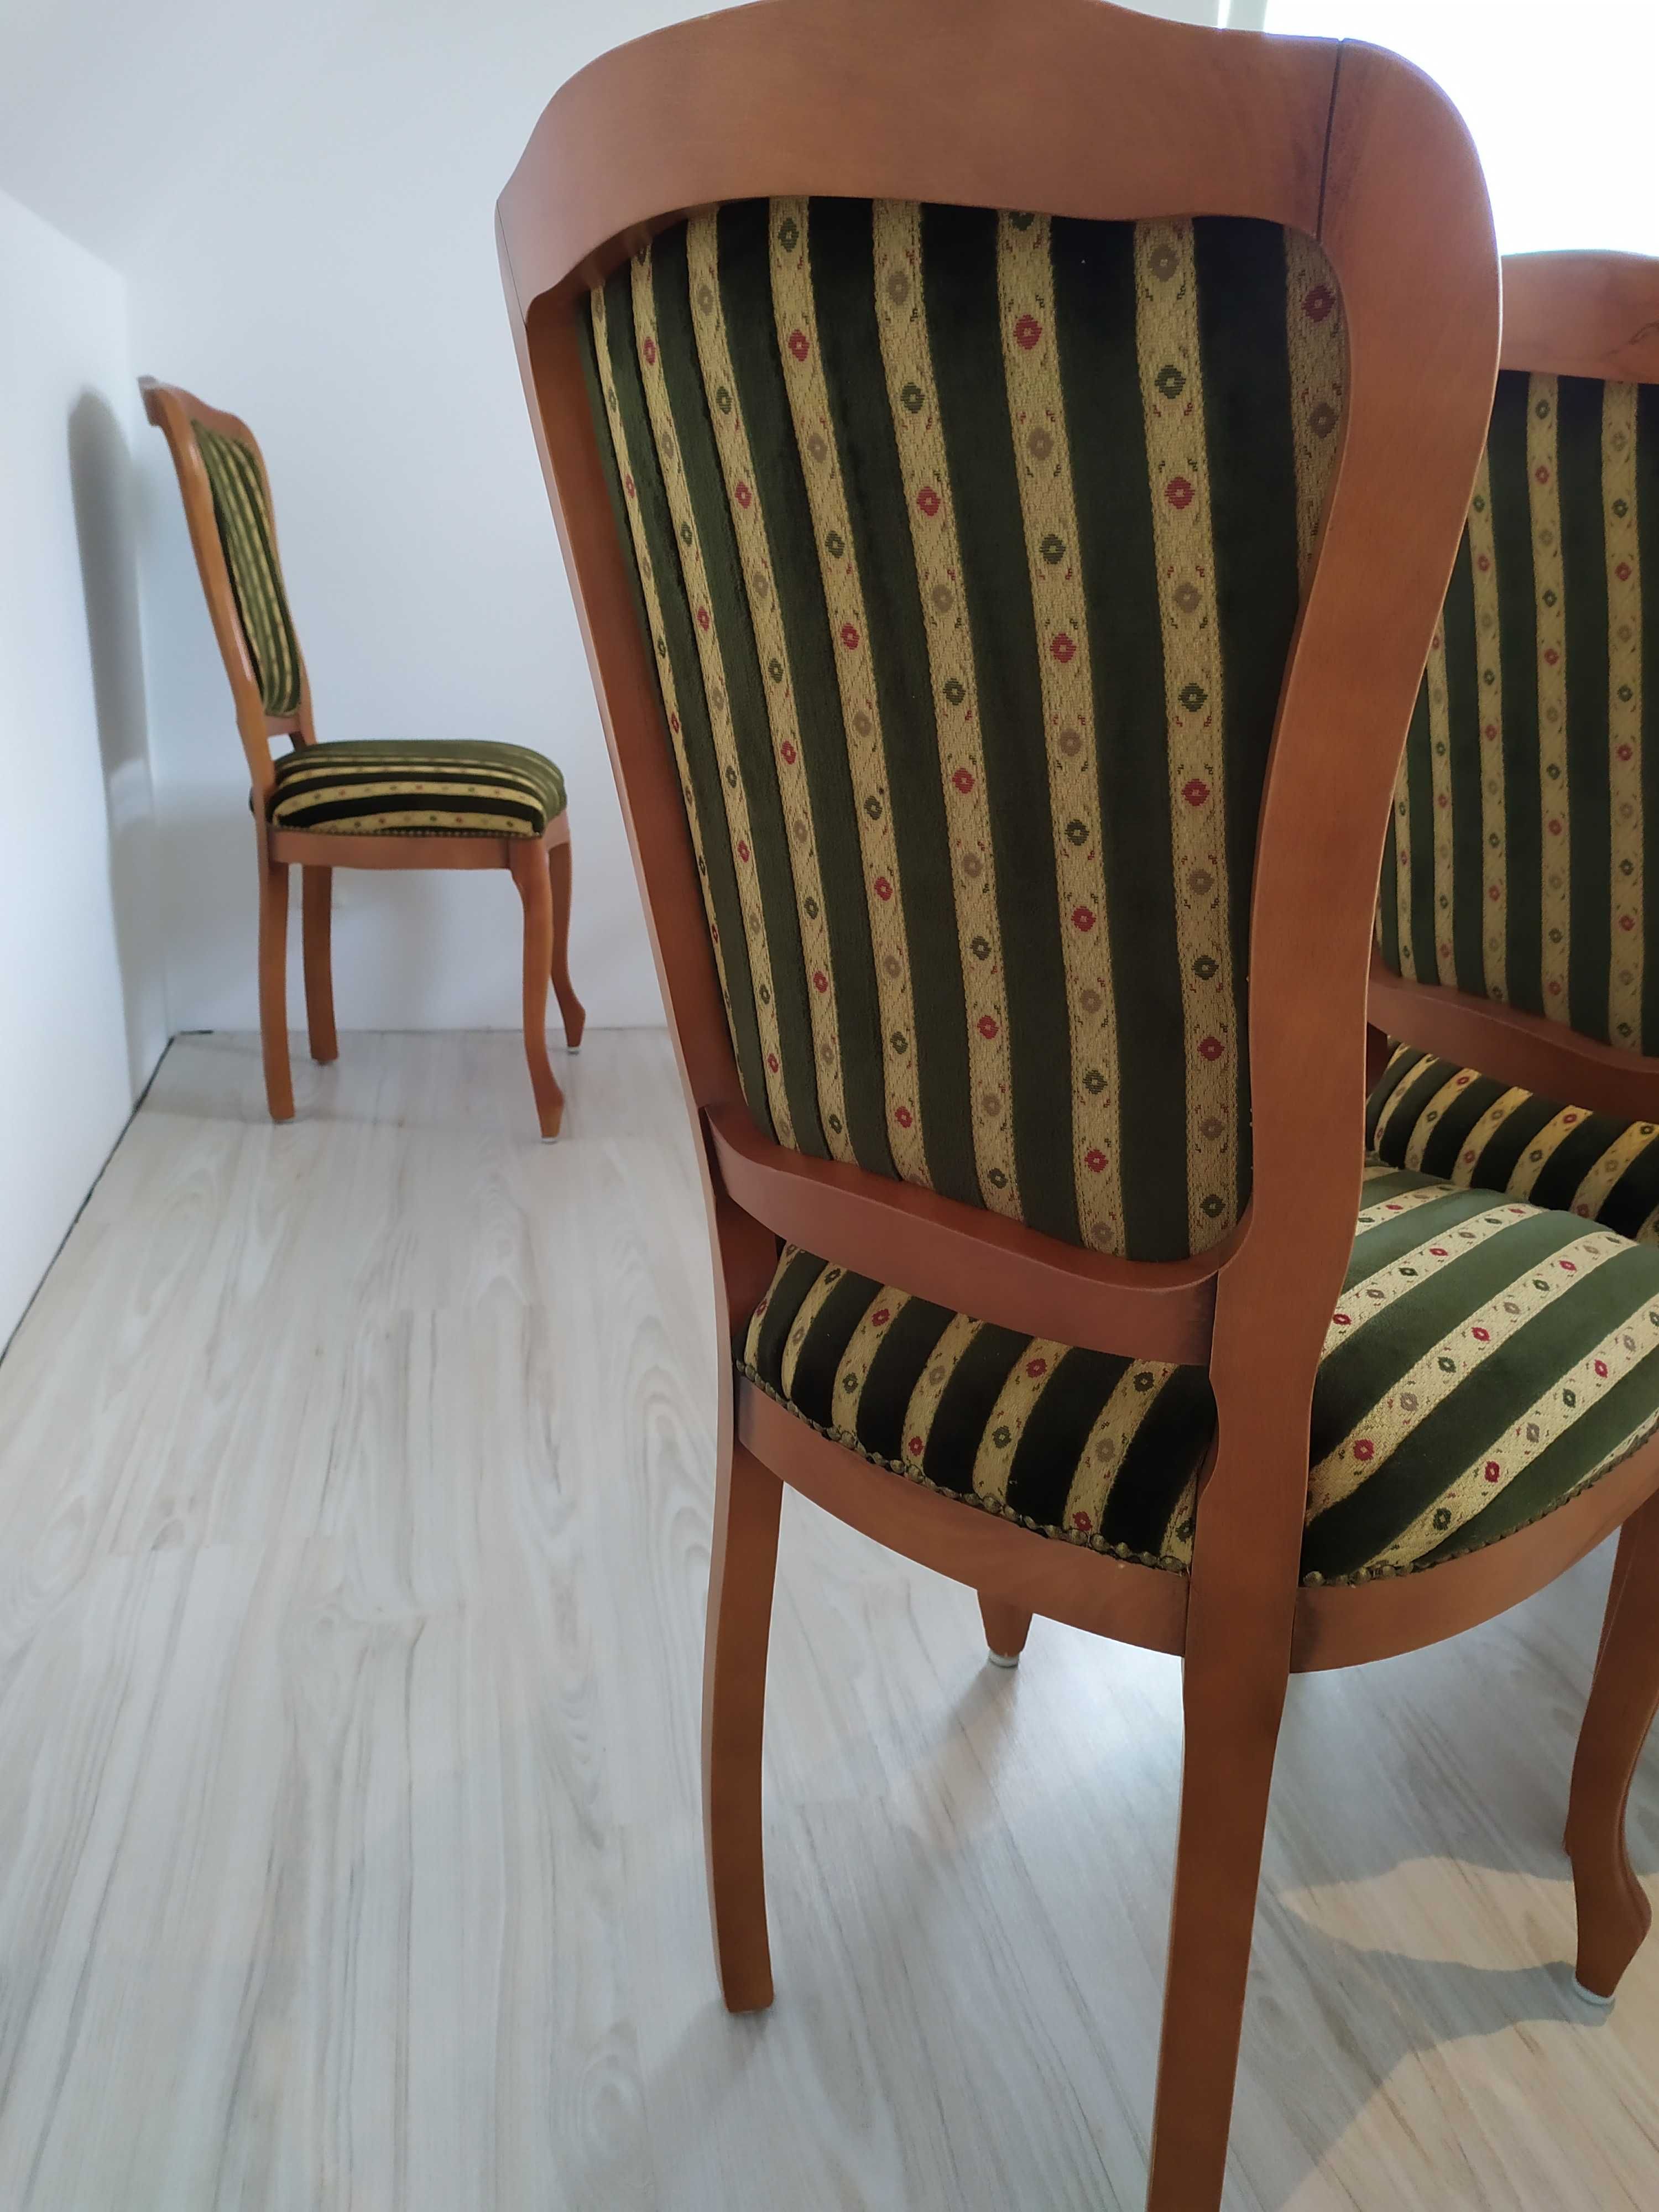 stół i krzesła stylowe do salonu jadalni włoskie